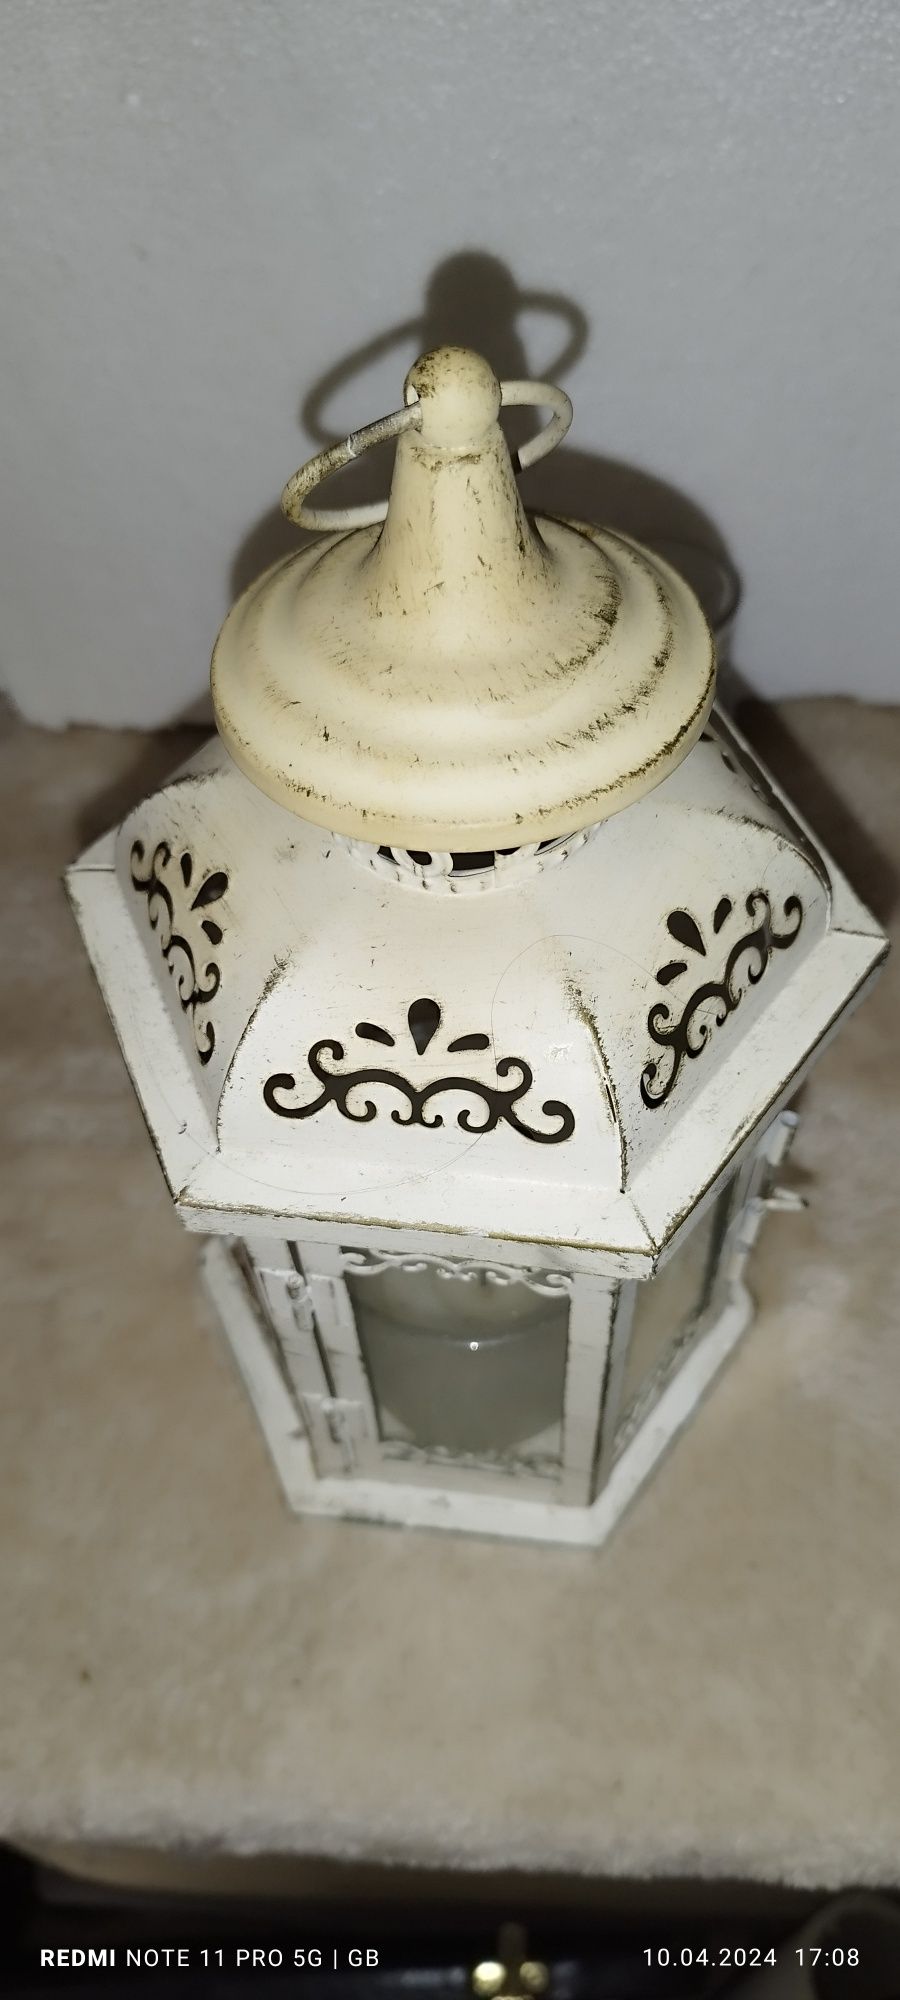 Co tam lampion – latarka zrobiona w starym stylu